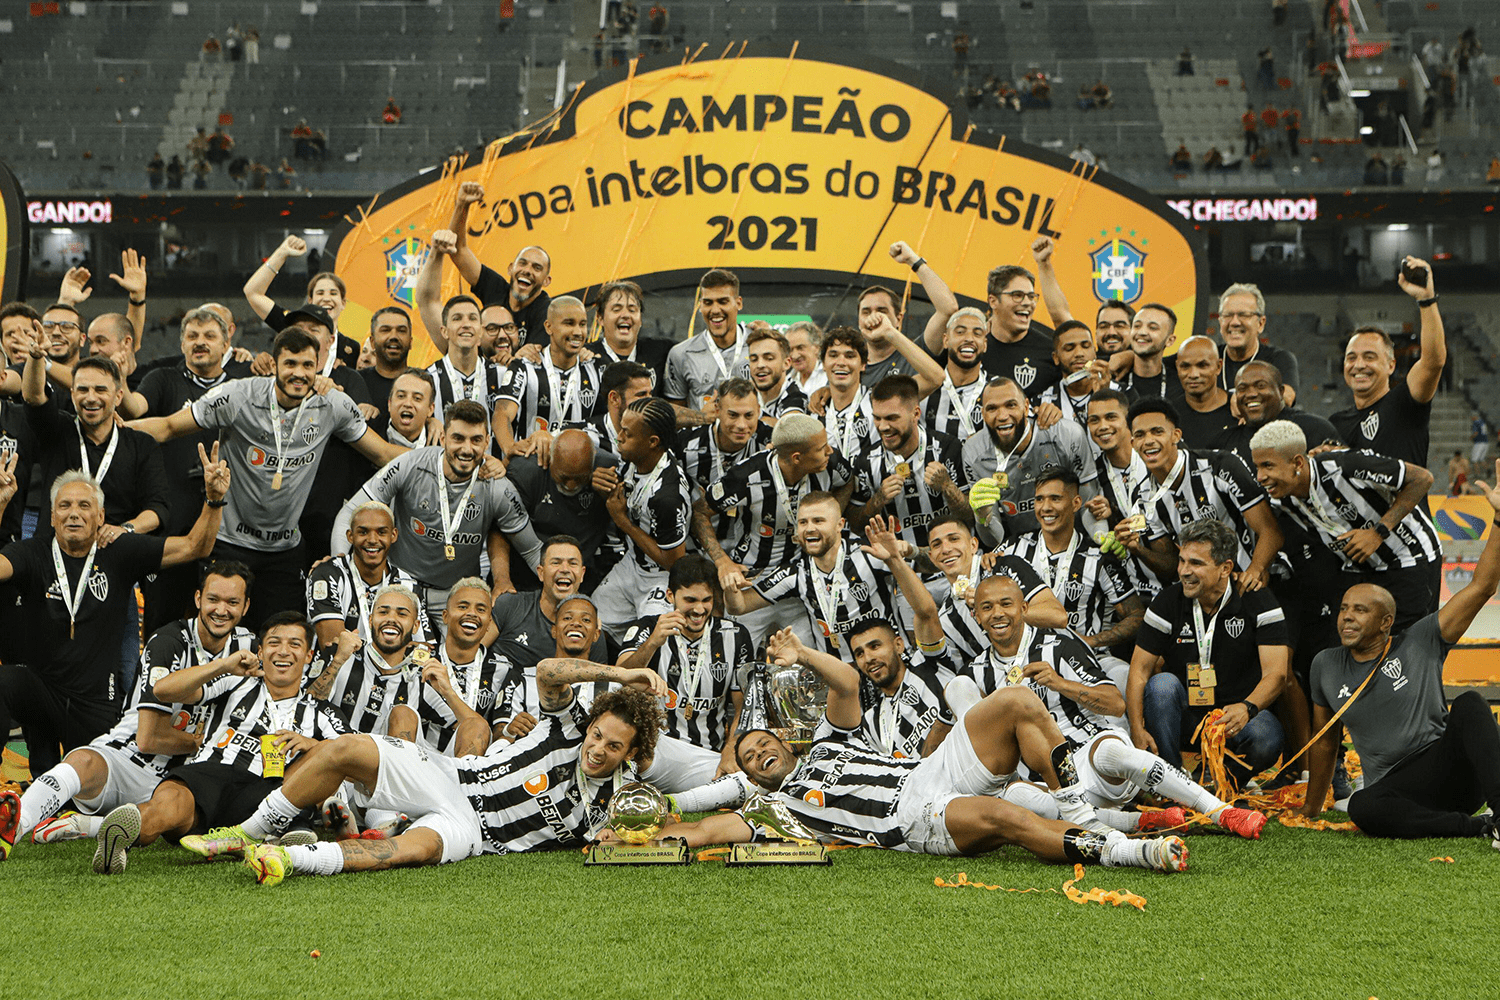 Estudo de caso: Atlético Mineiro, campeão da Série A 2021